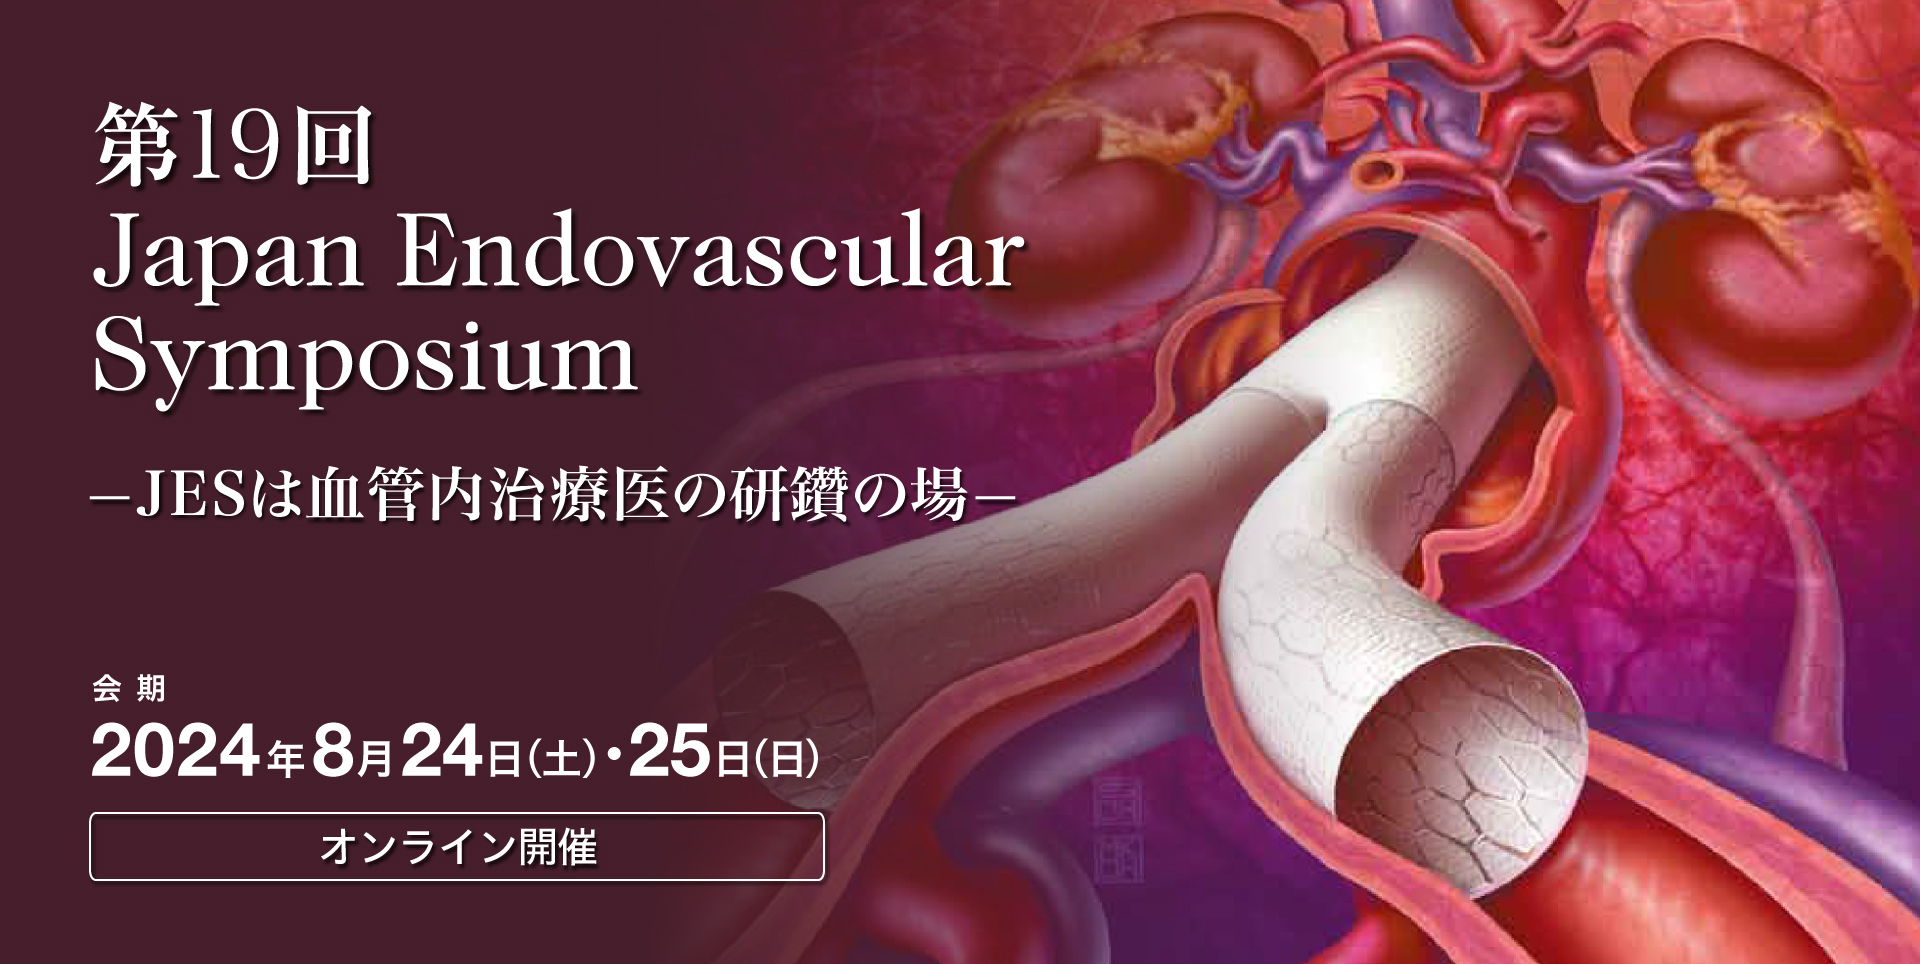 第18回 Japan Endovascular Symposium —JESは血管内治療医の研鑽の場—